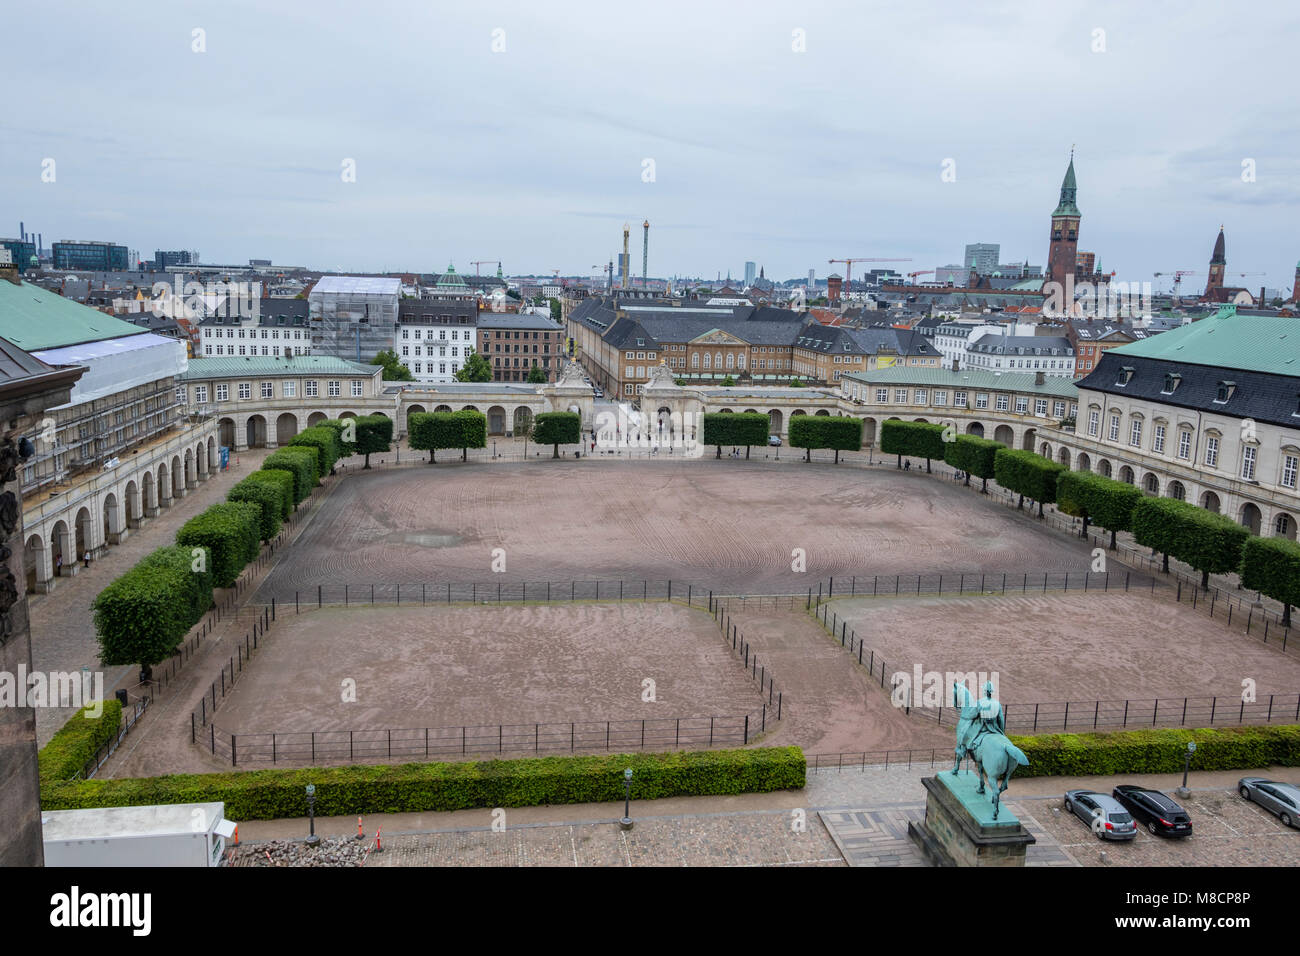 Ridebanen au Palais de Christiansborg Slotsholmen avec le parlement danois Banque D'Images